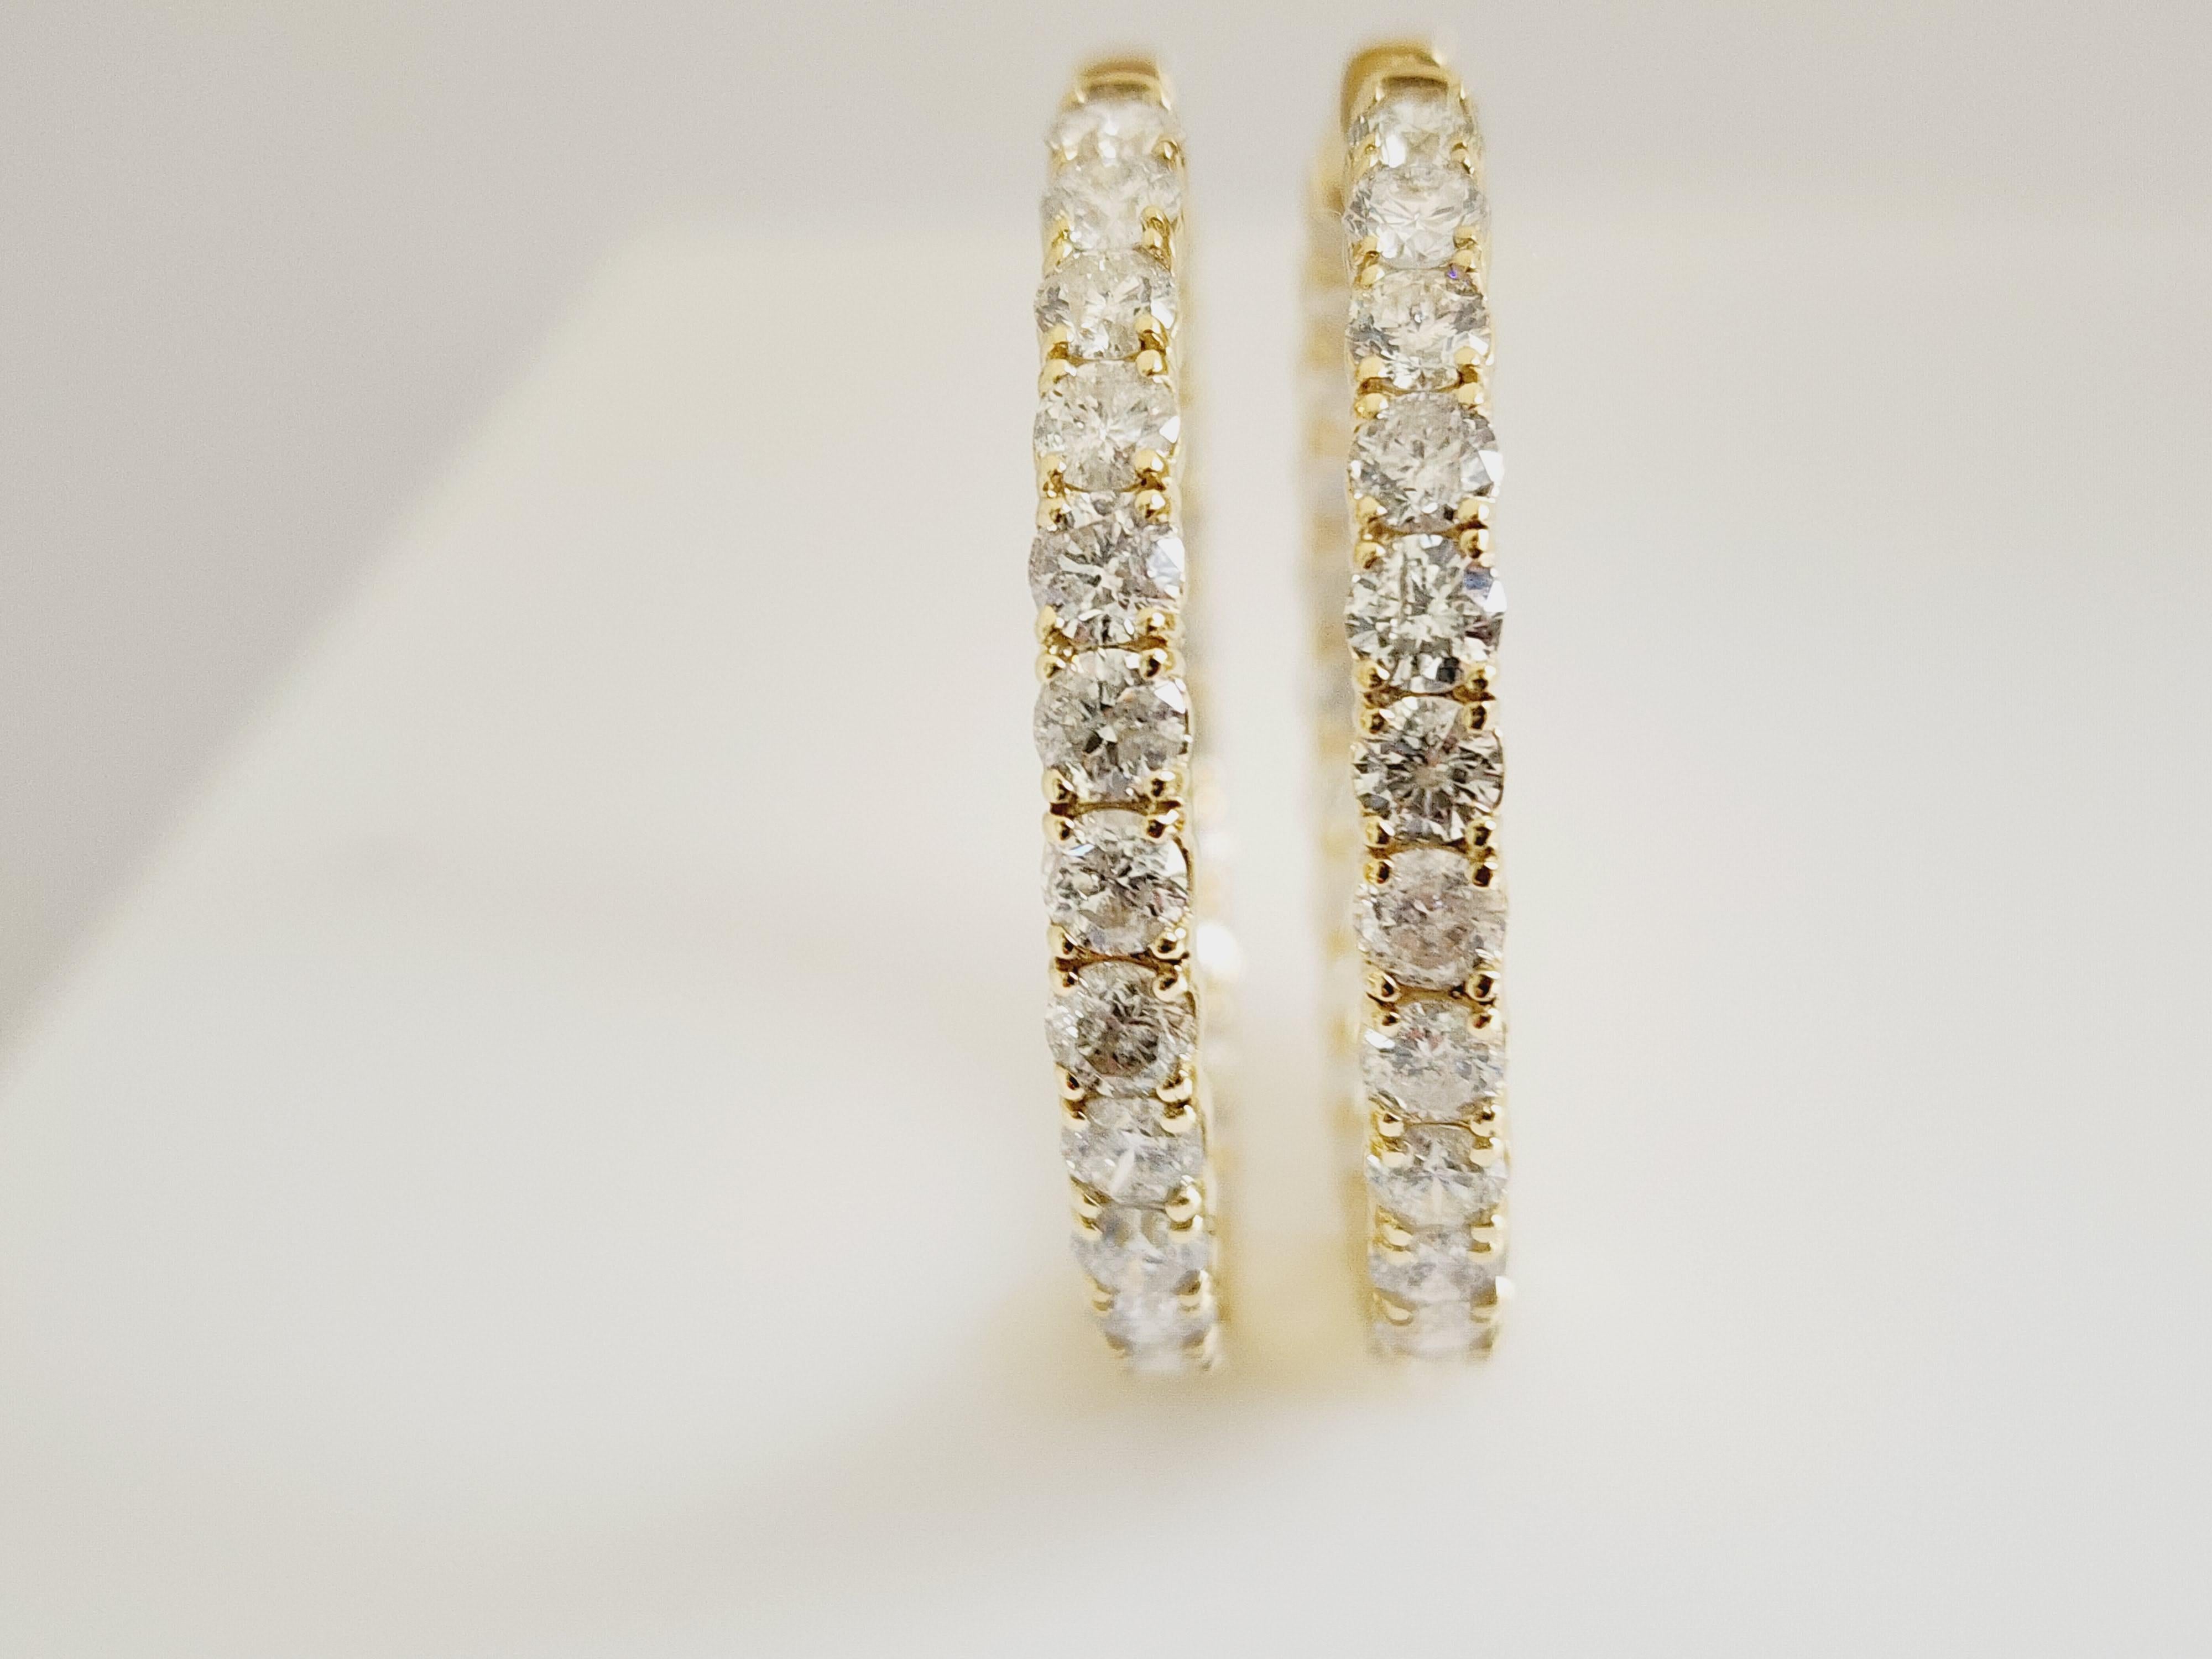 10 Carat Diamond Hoops Earrings 14 Karat Yellow Gold For Sale 1